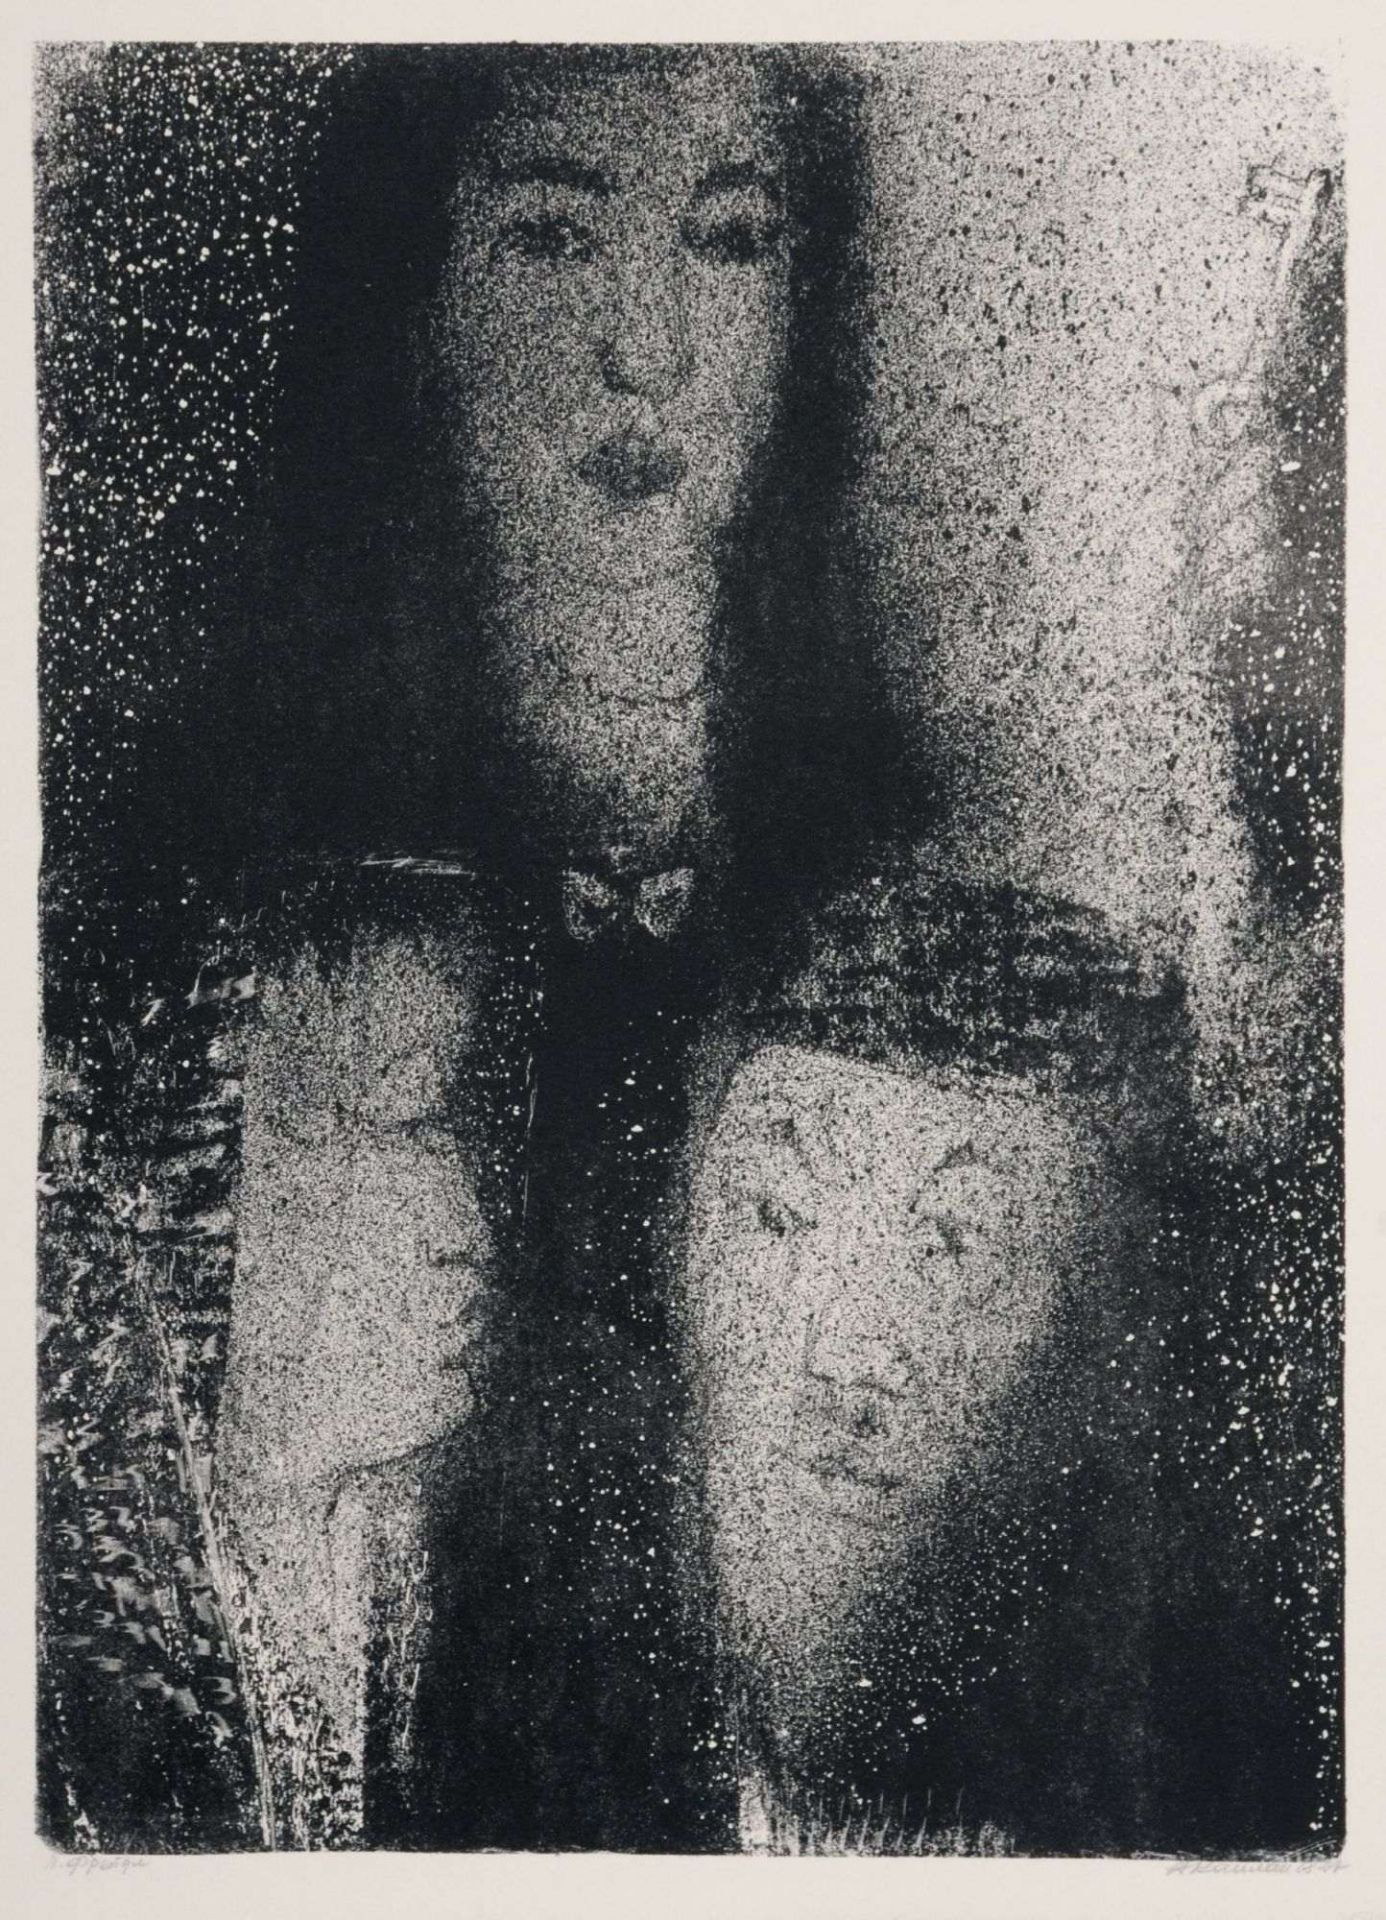 Anatoli Kaplan "Frejdl und ihre Eltern". 1965.